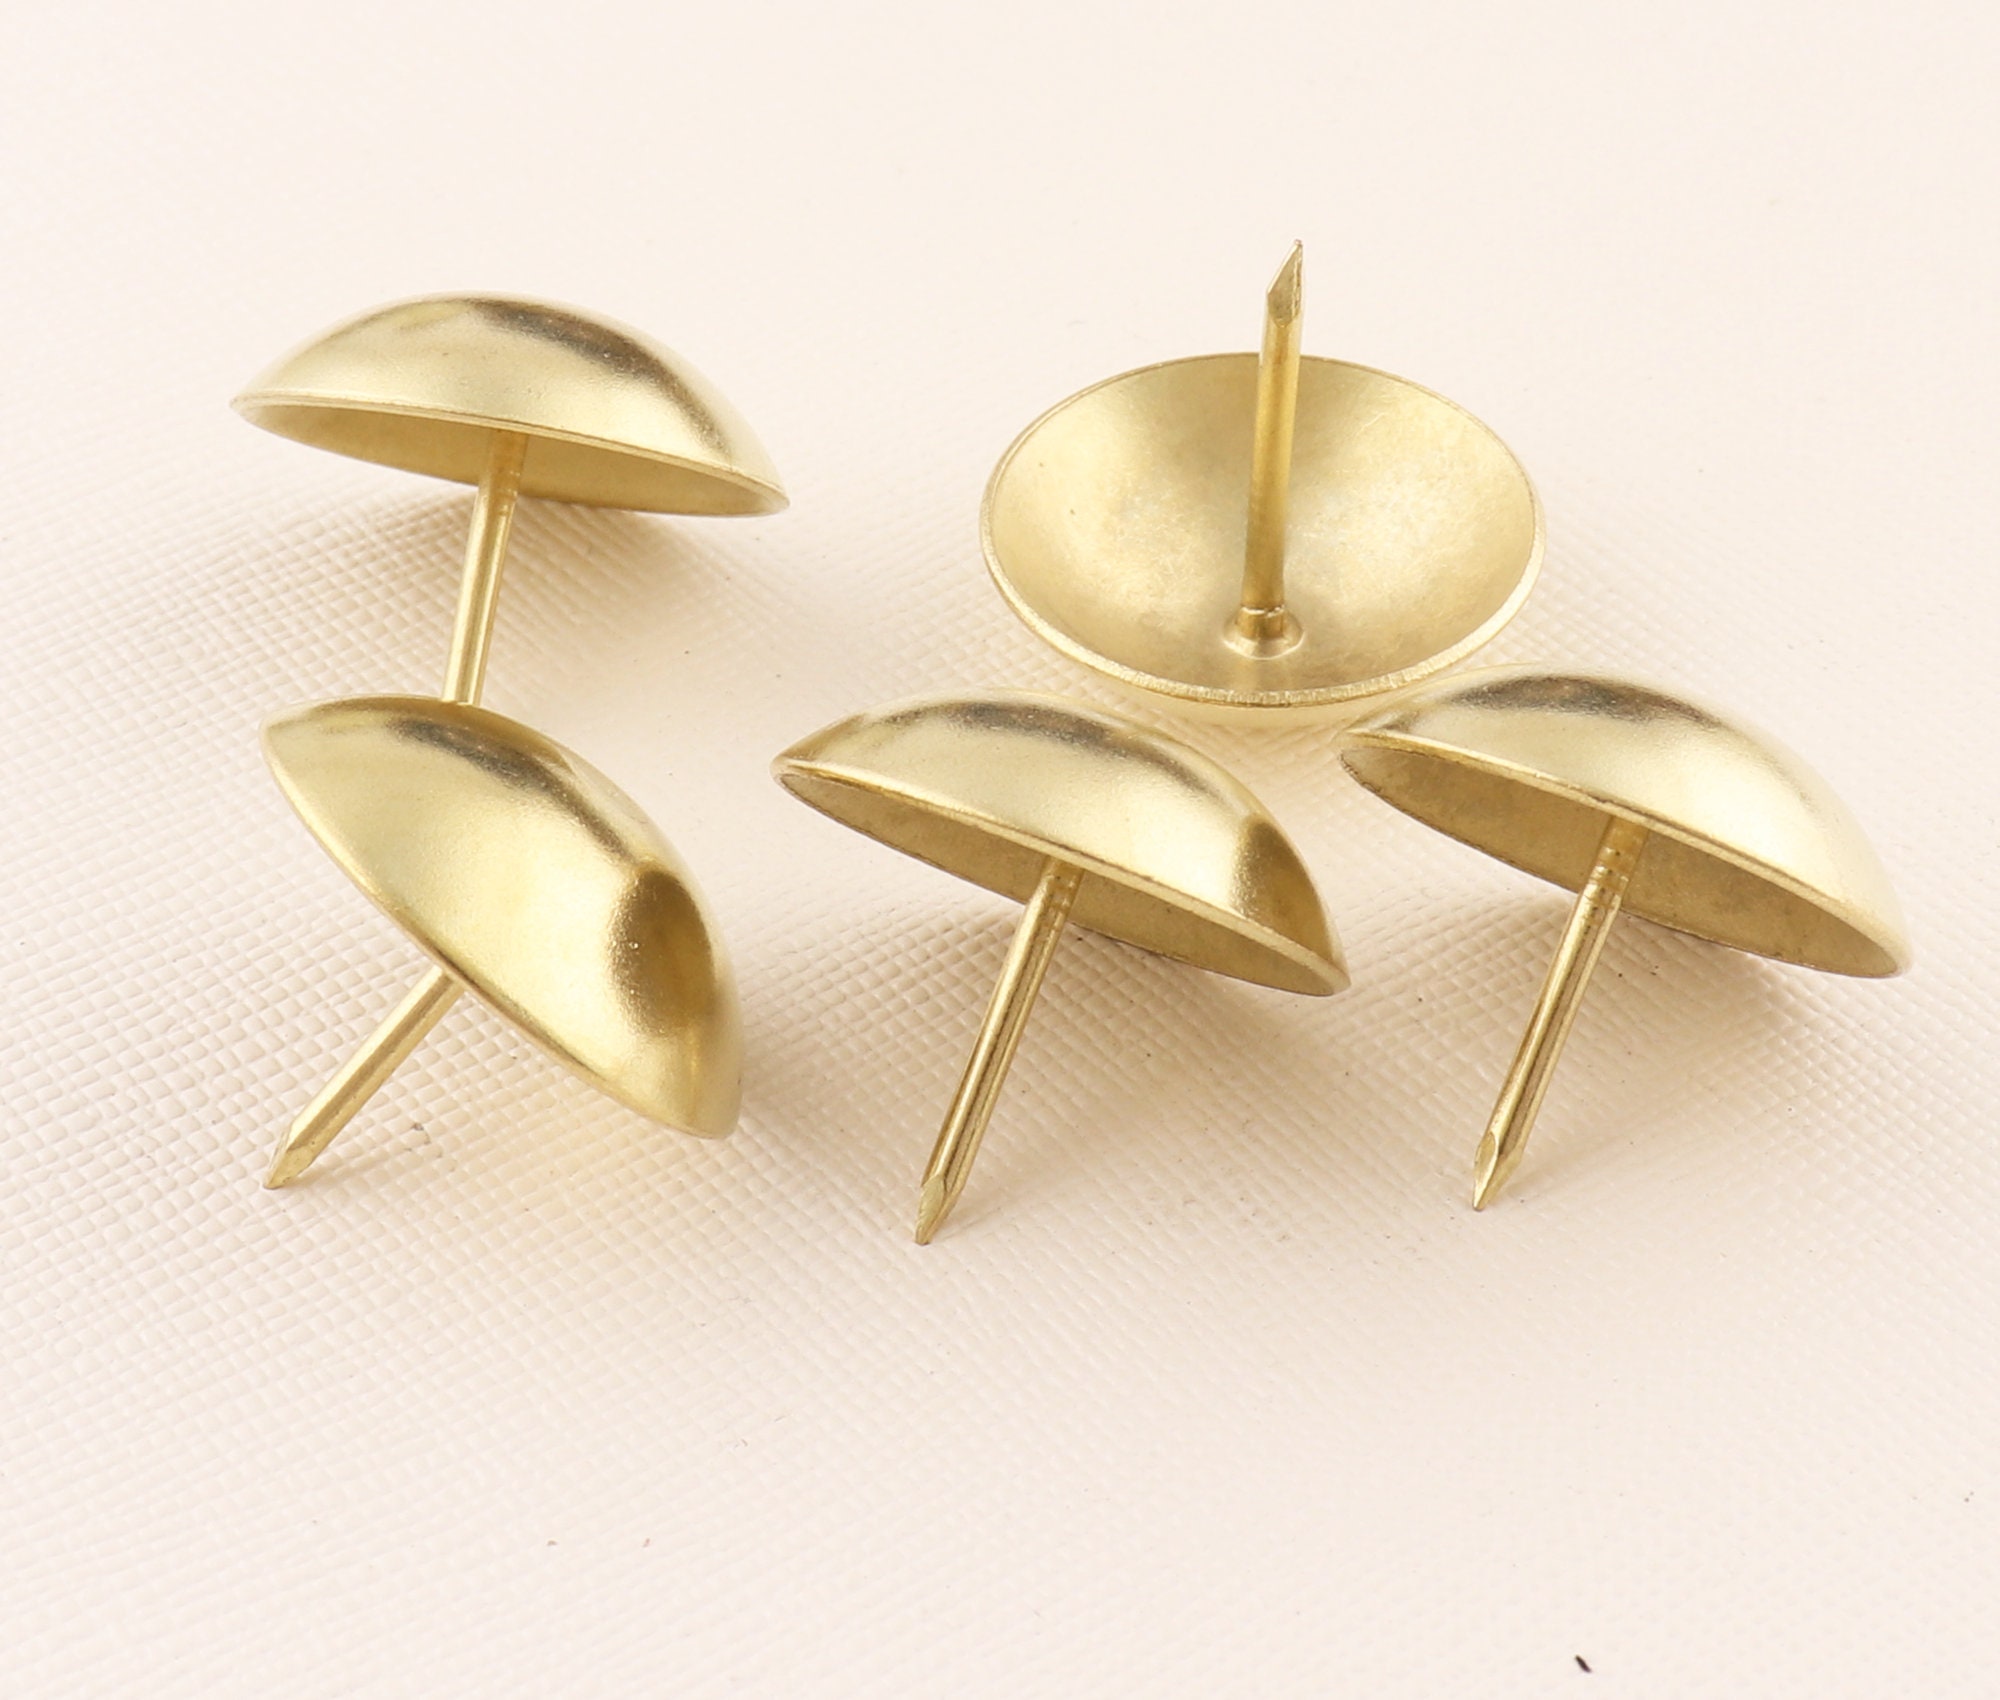 Bronze Push Pins, Thumb Tacks, Decorative Tacks, Furniture Tacks, Sofa Tacks,  Upholstery Tacks, Decorative Push Pins 